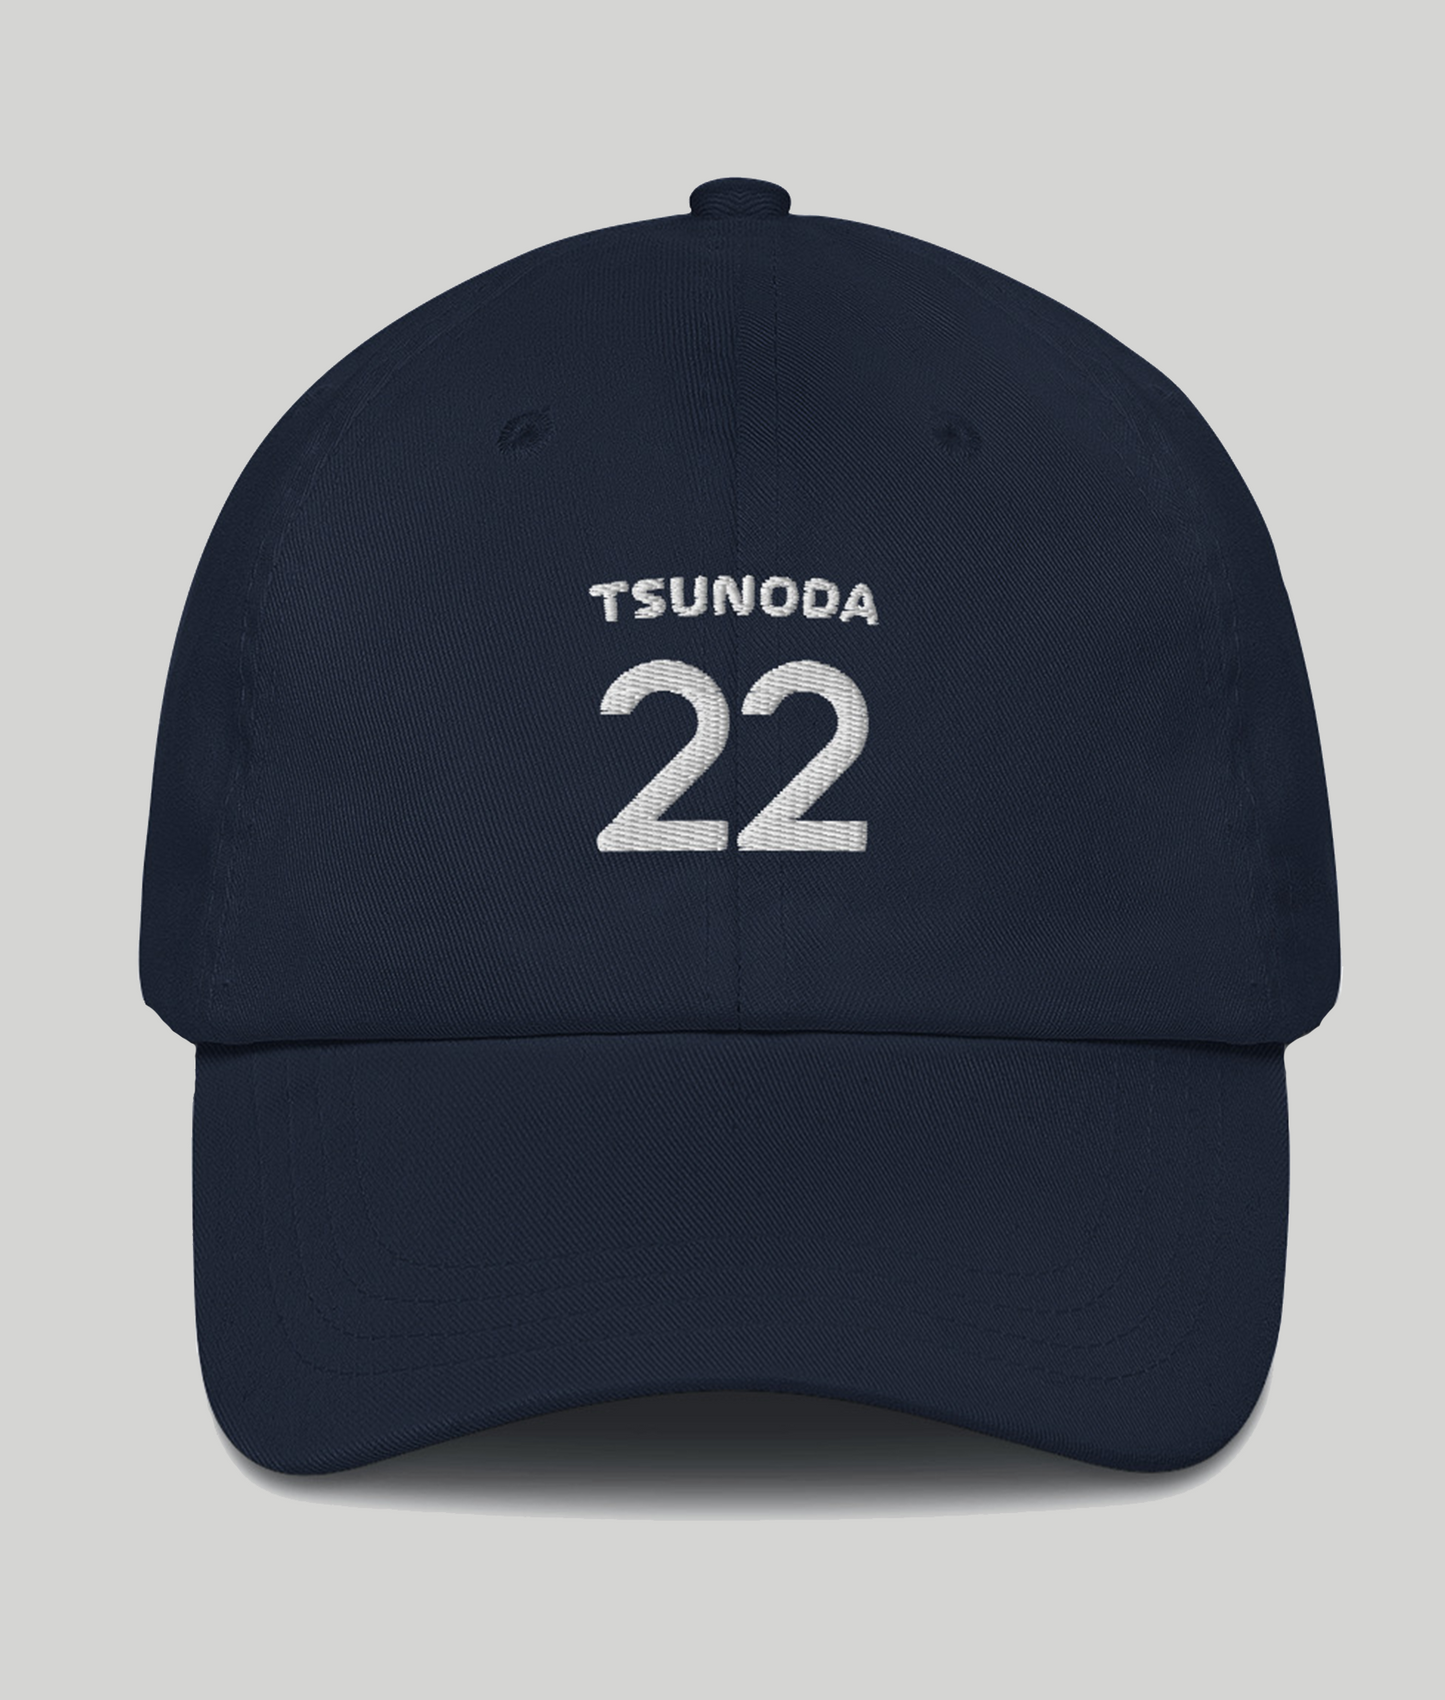 Yuki Tsunoda 22 Navy Blue Hat